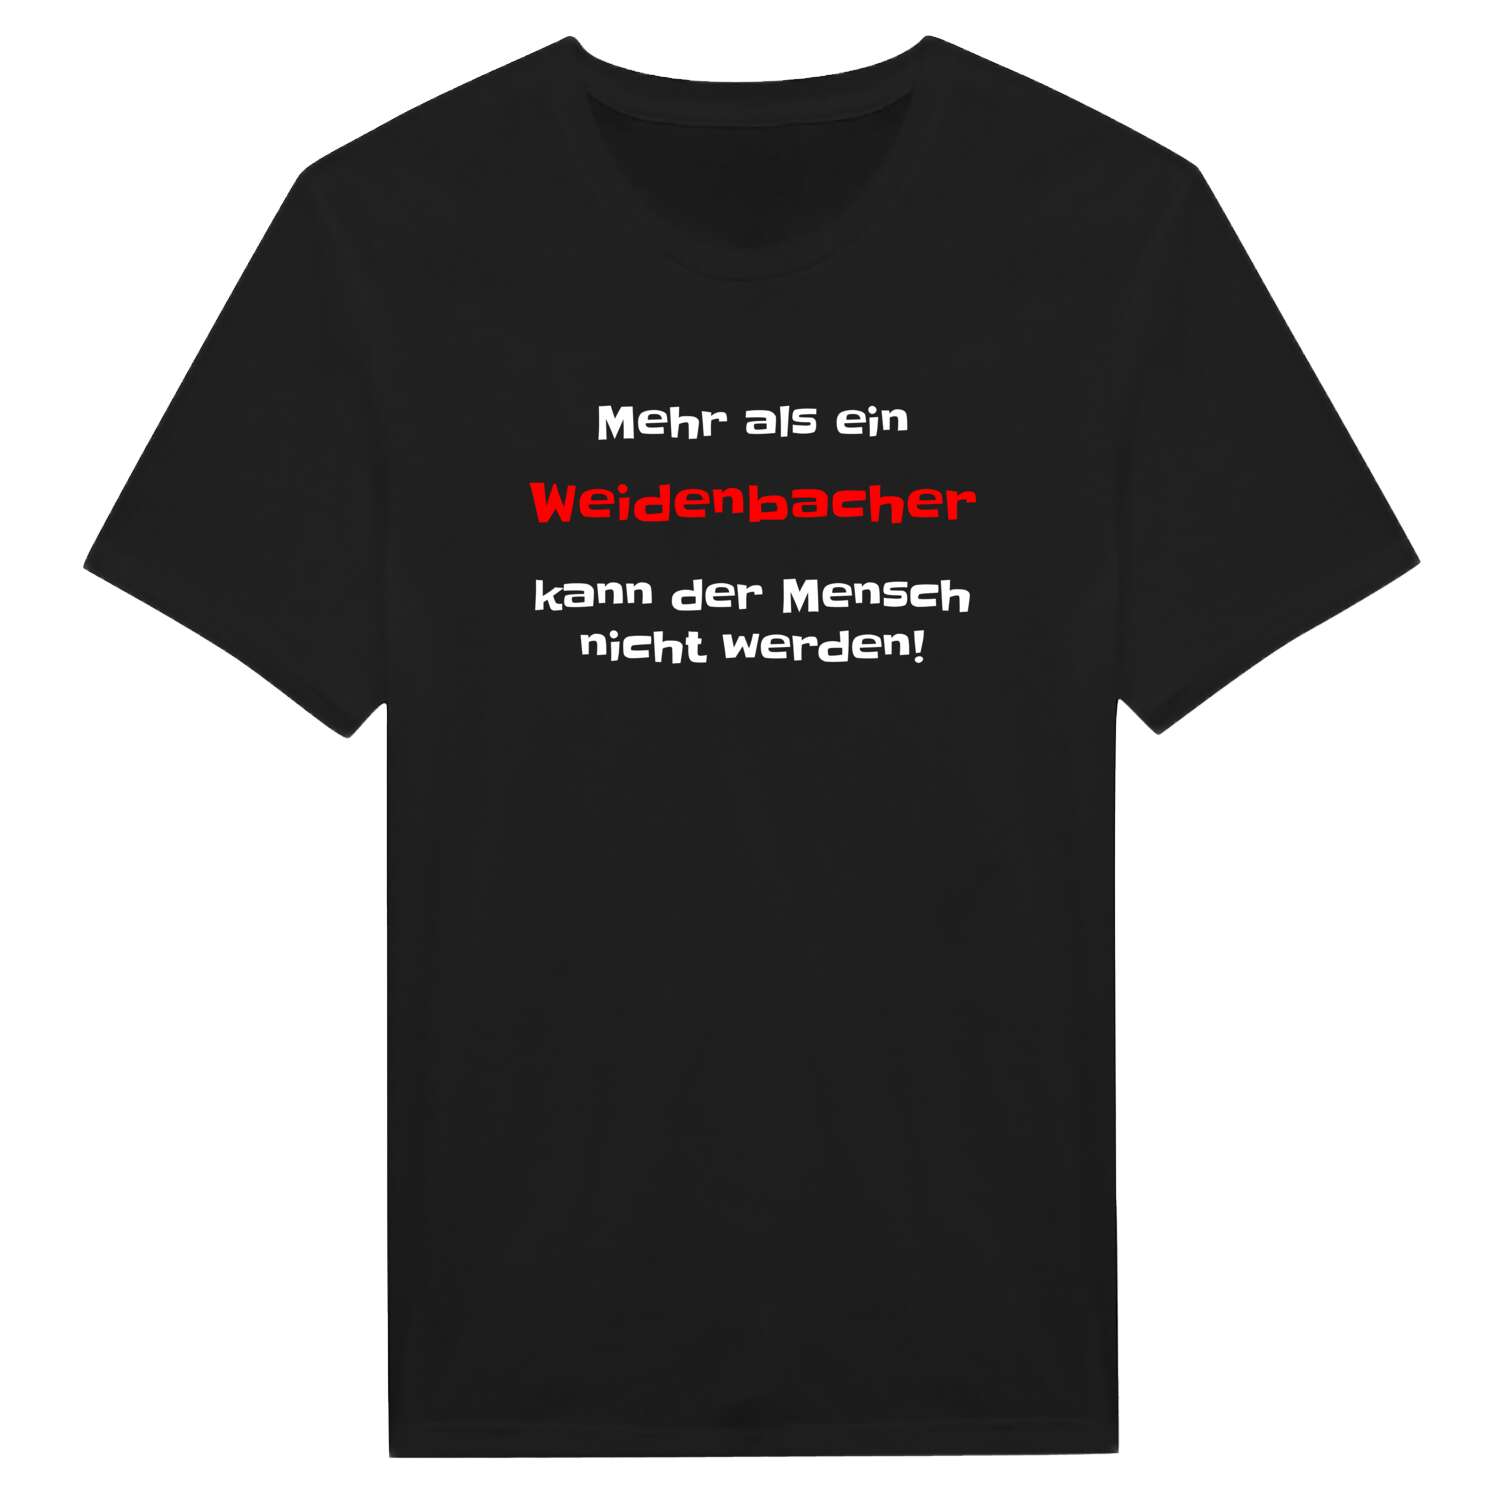 Weidenbach T-Shirt »Mehr als ein«